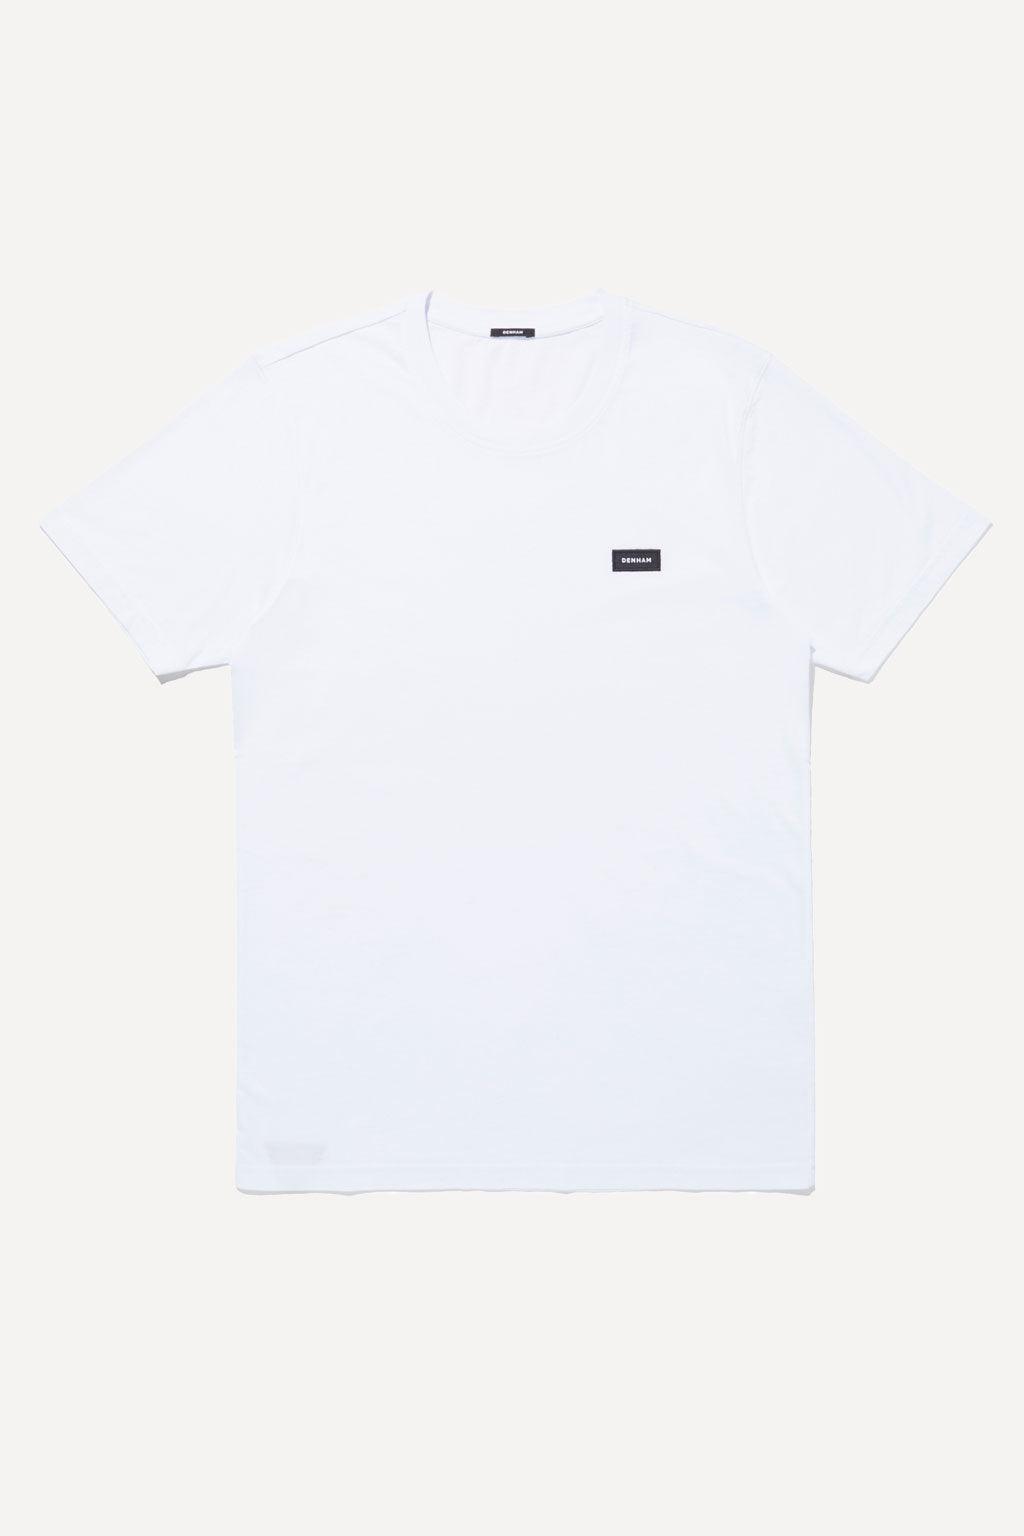 Denham t-shirt | Big Boss | the menswear concept